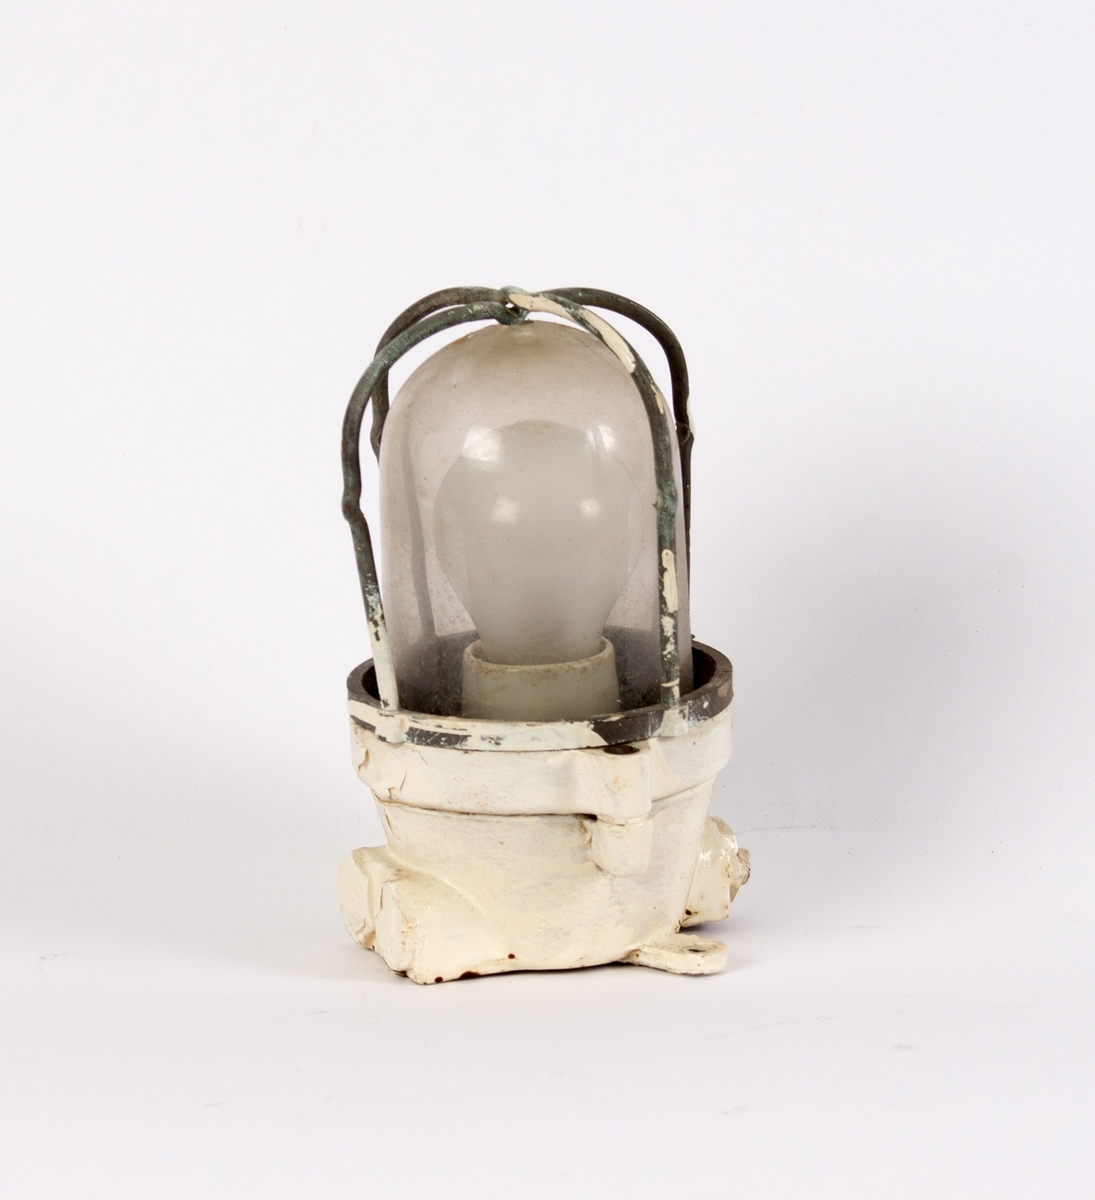 Lampe fra stålbark STATSRAAD LEHMKUHL. Rund elektrisk lampe med glasskuppel med beskyttelsesgitter.